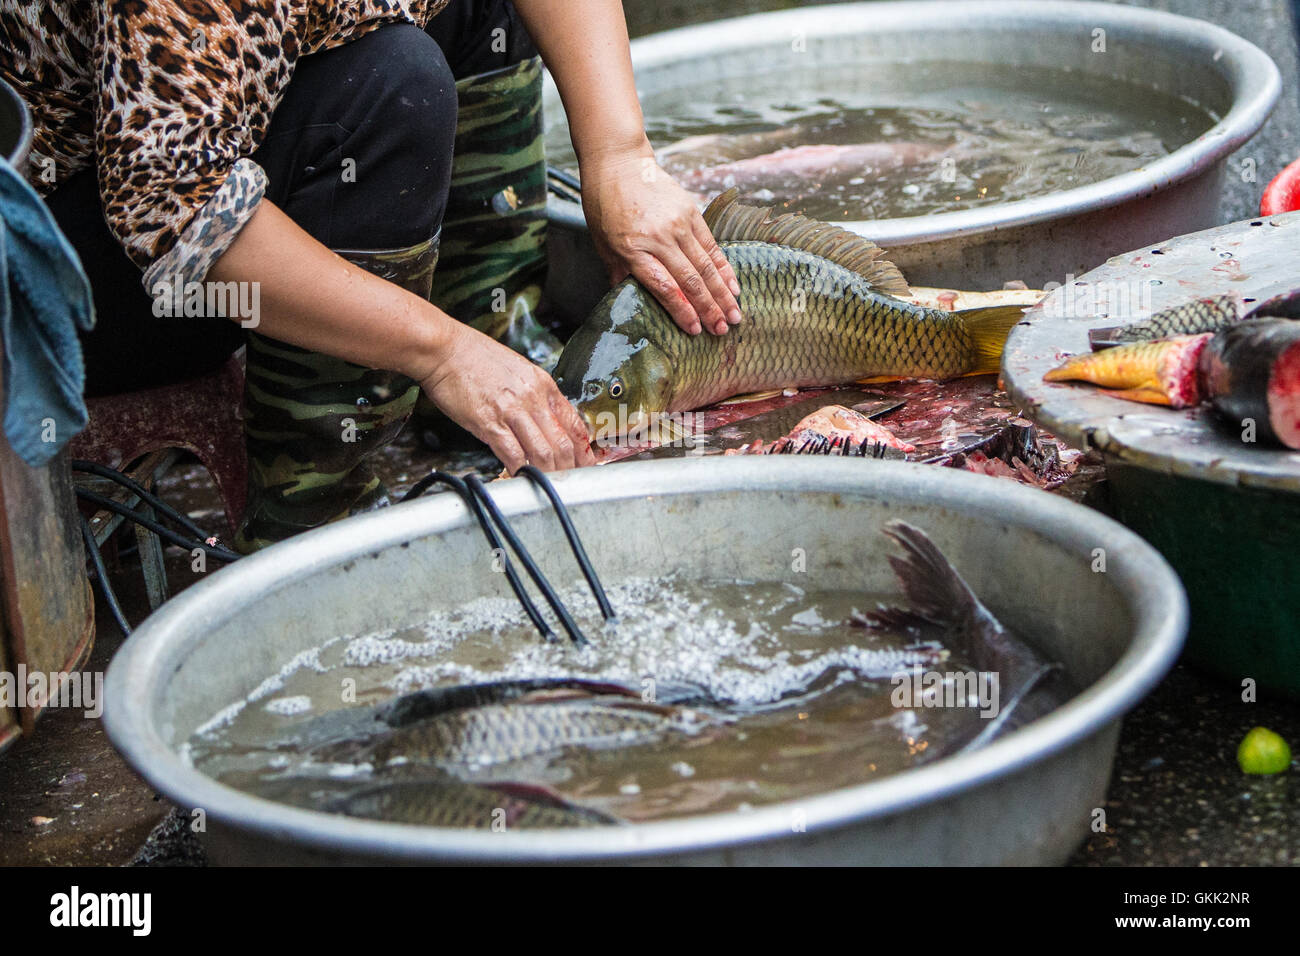 Poissonnier vendeur de poisson à Hanoi Vietnam Asie Marché Rue humide Banque D'Images